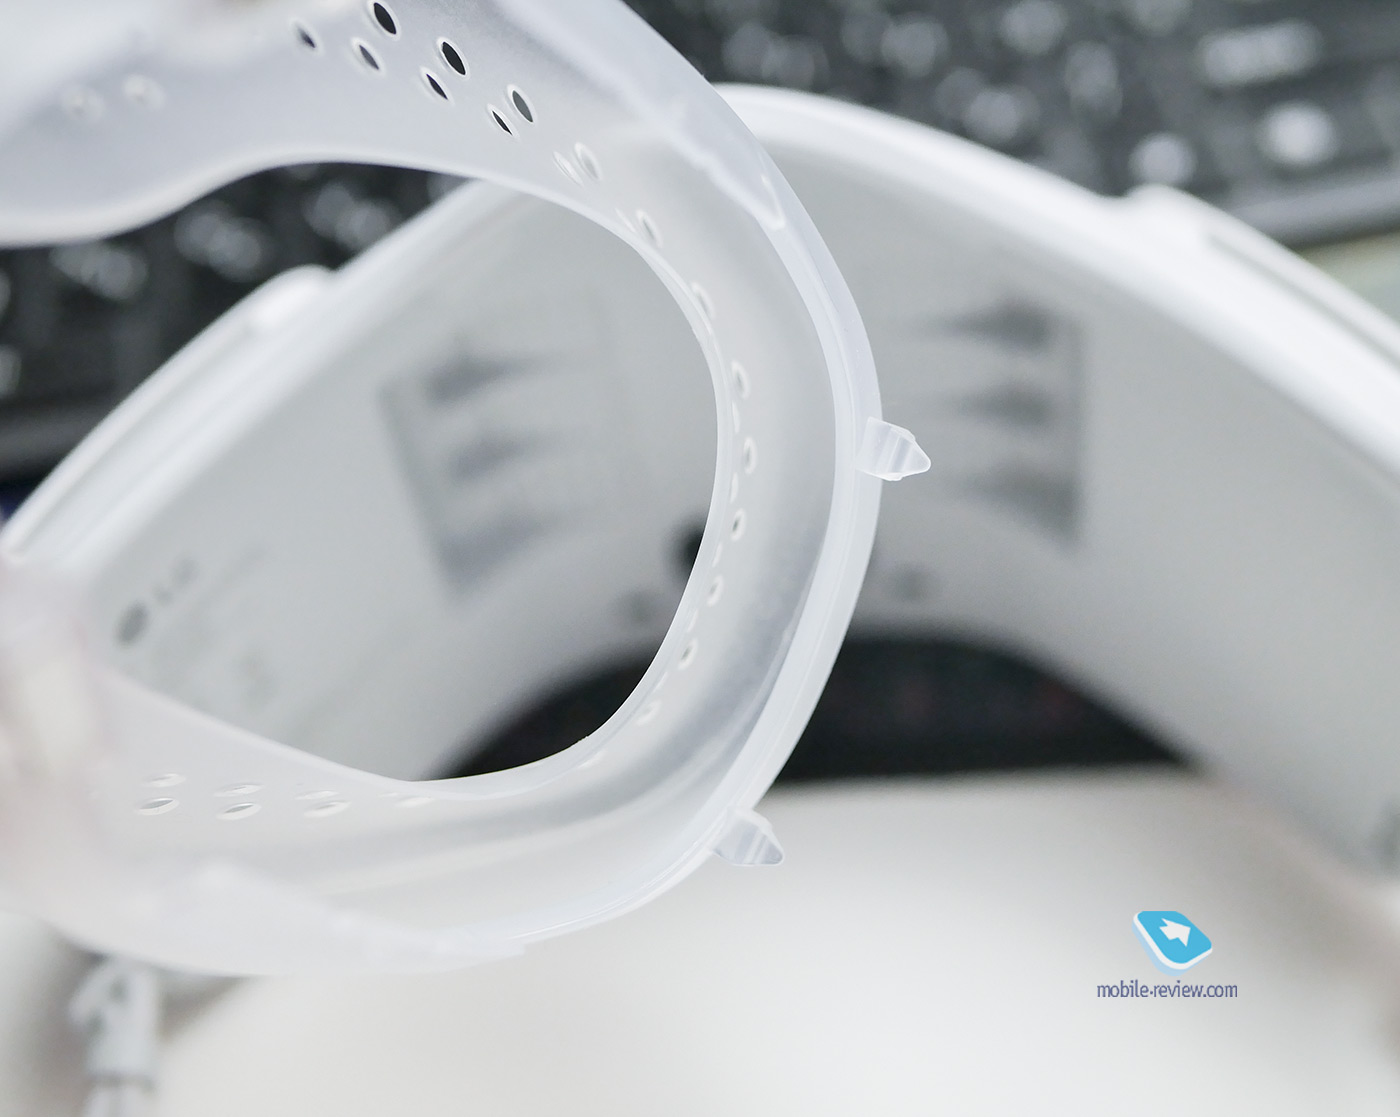 Огляд маски LG PuriCare Wearable Air Purifier - дорога іграшка або важливий сучасний пристрій? width=